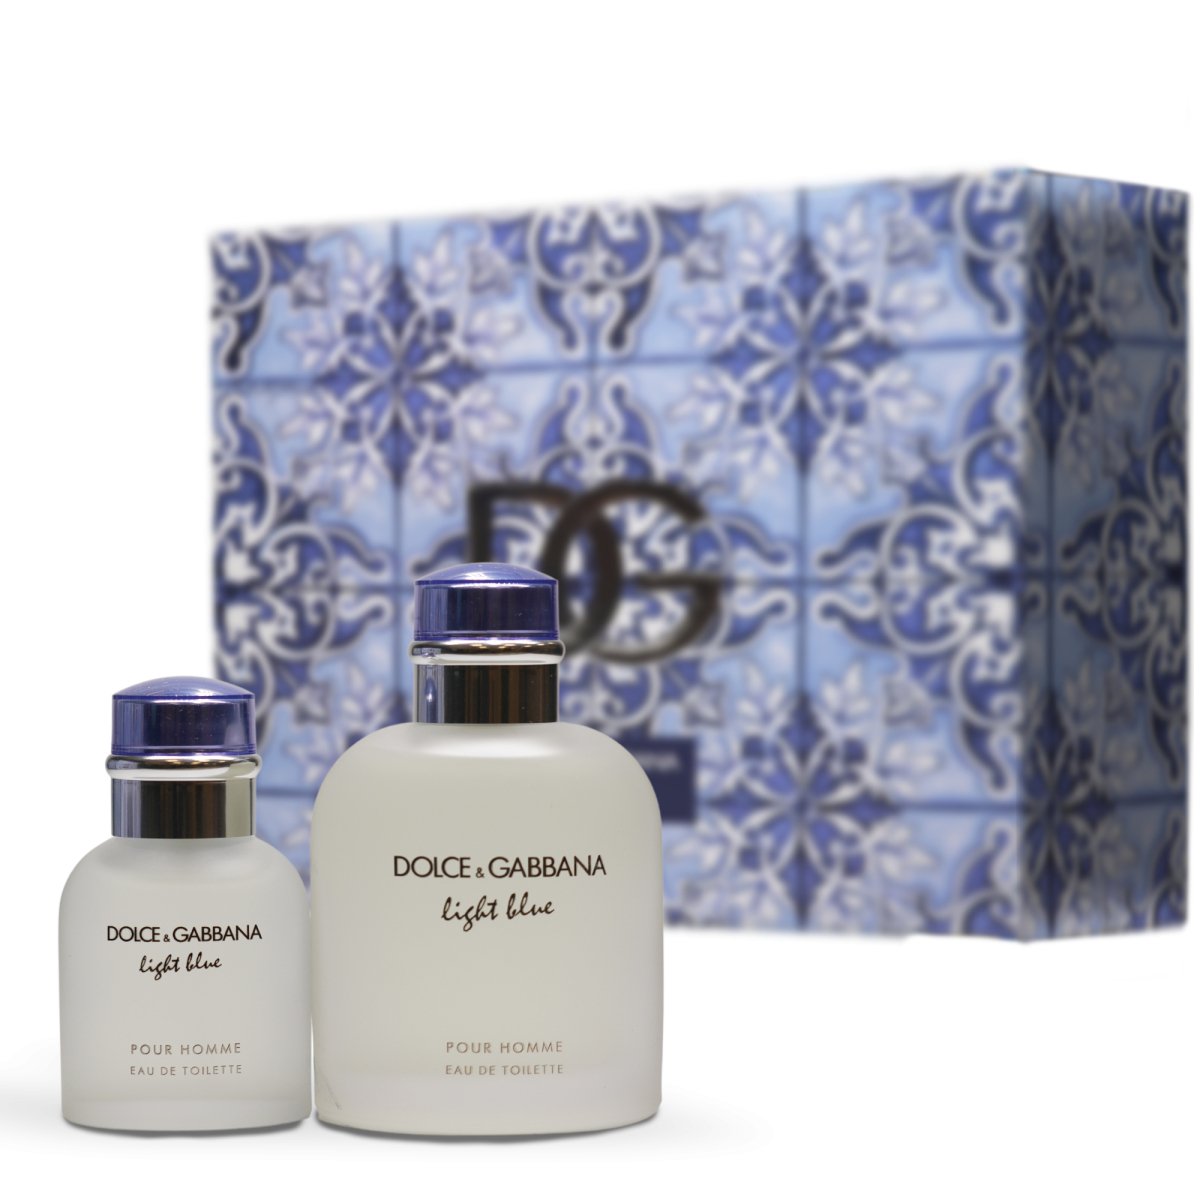 Dolce & Gabbana Light Blue Pour Homme Eau de Toilette Duo Set for mens - Perfume head quarters - Dolce & Gabbana - Gift Set